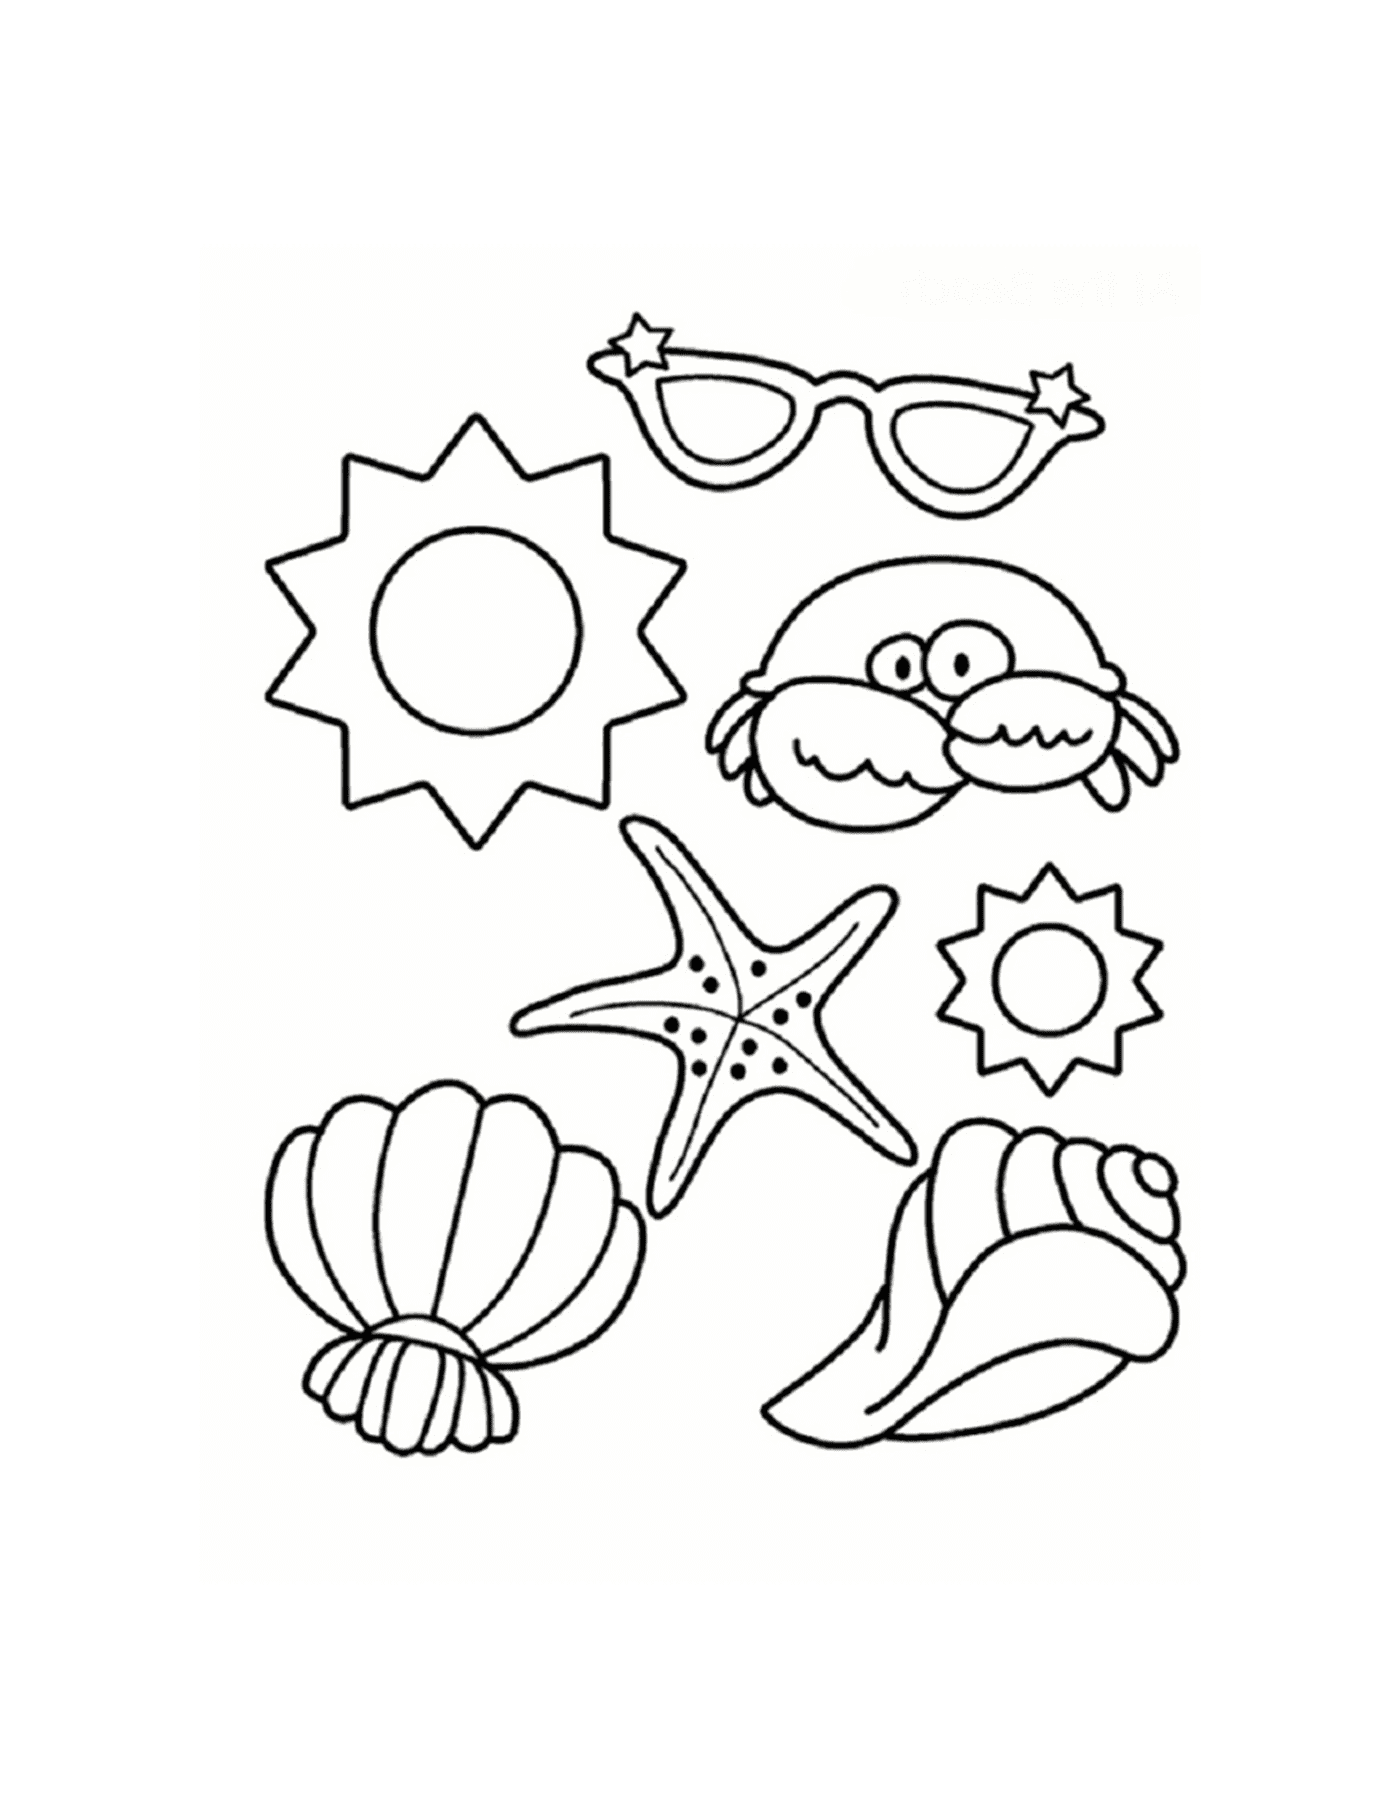  Marisco, estrella de mar, cangrejo y gafas de sol en la playa 